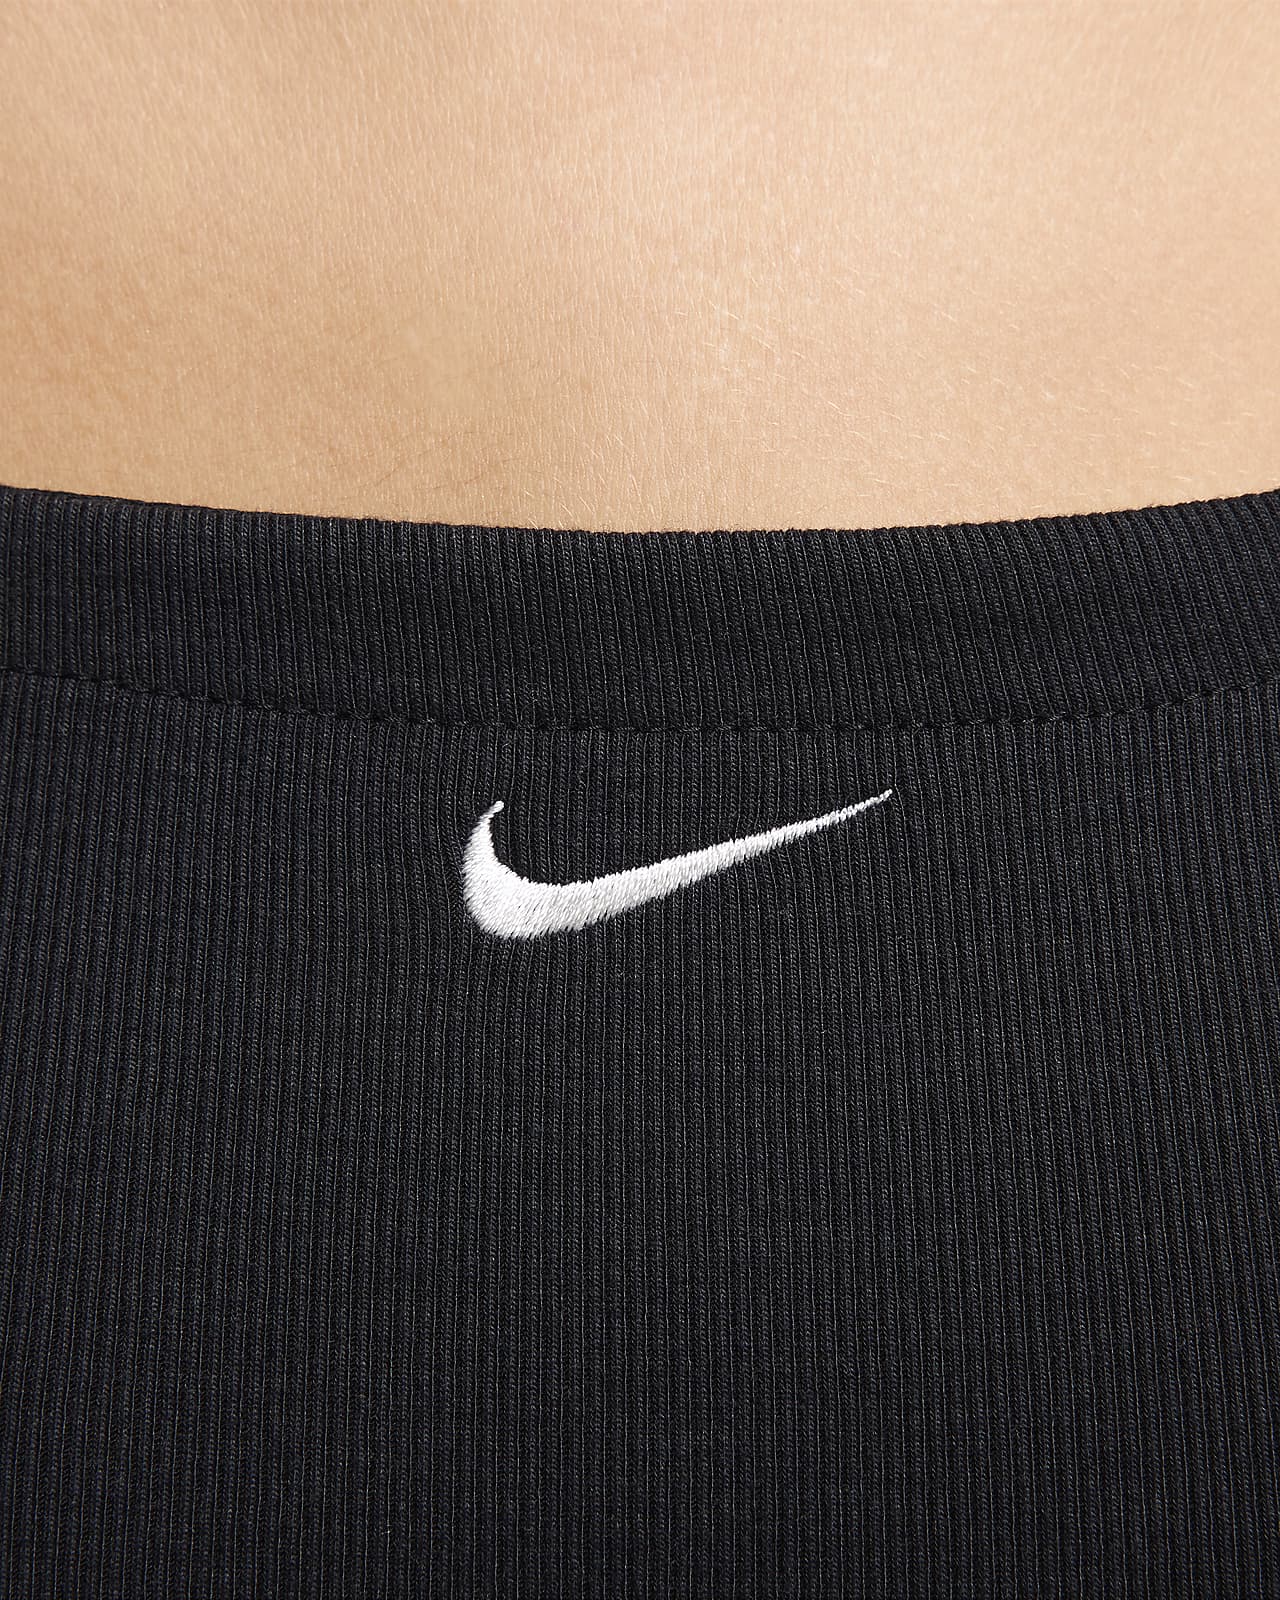 Nike Sportswear Chill Knit Women's Tight Cami Bodysuit.